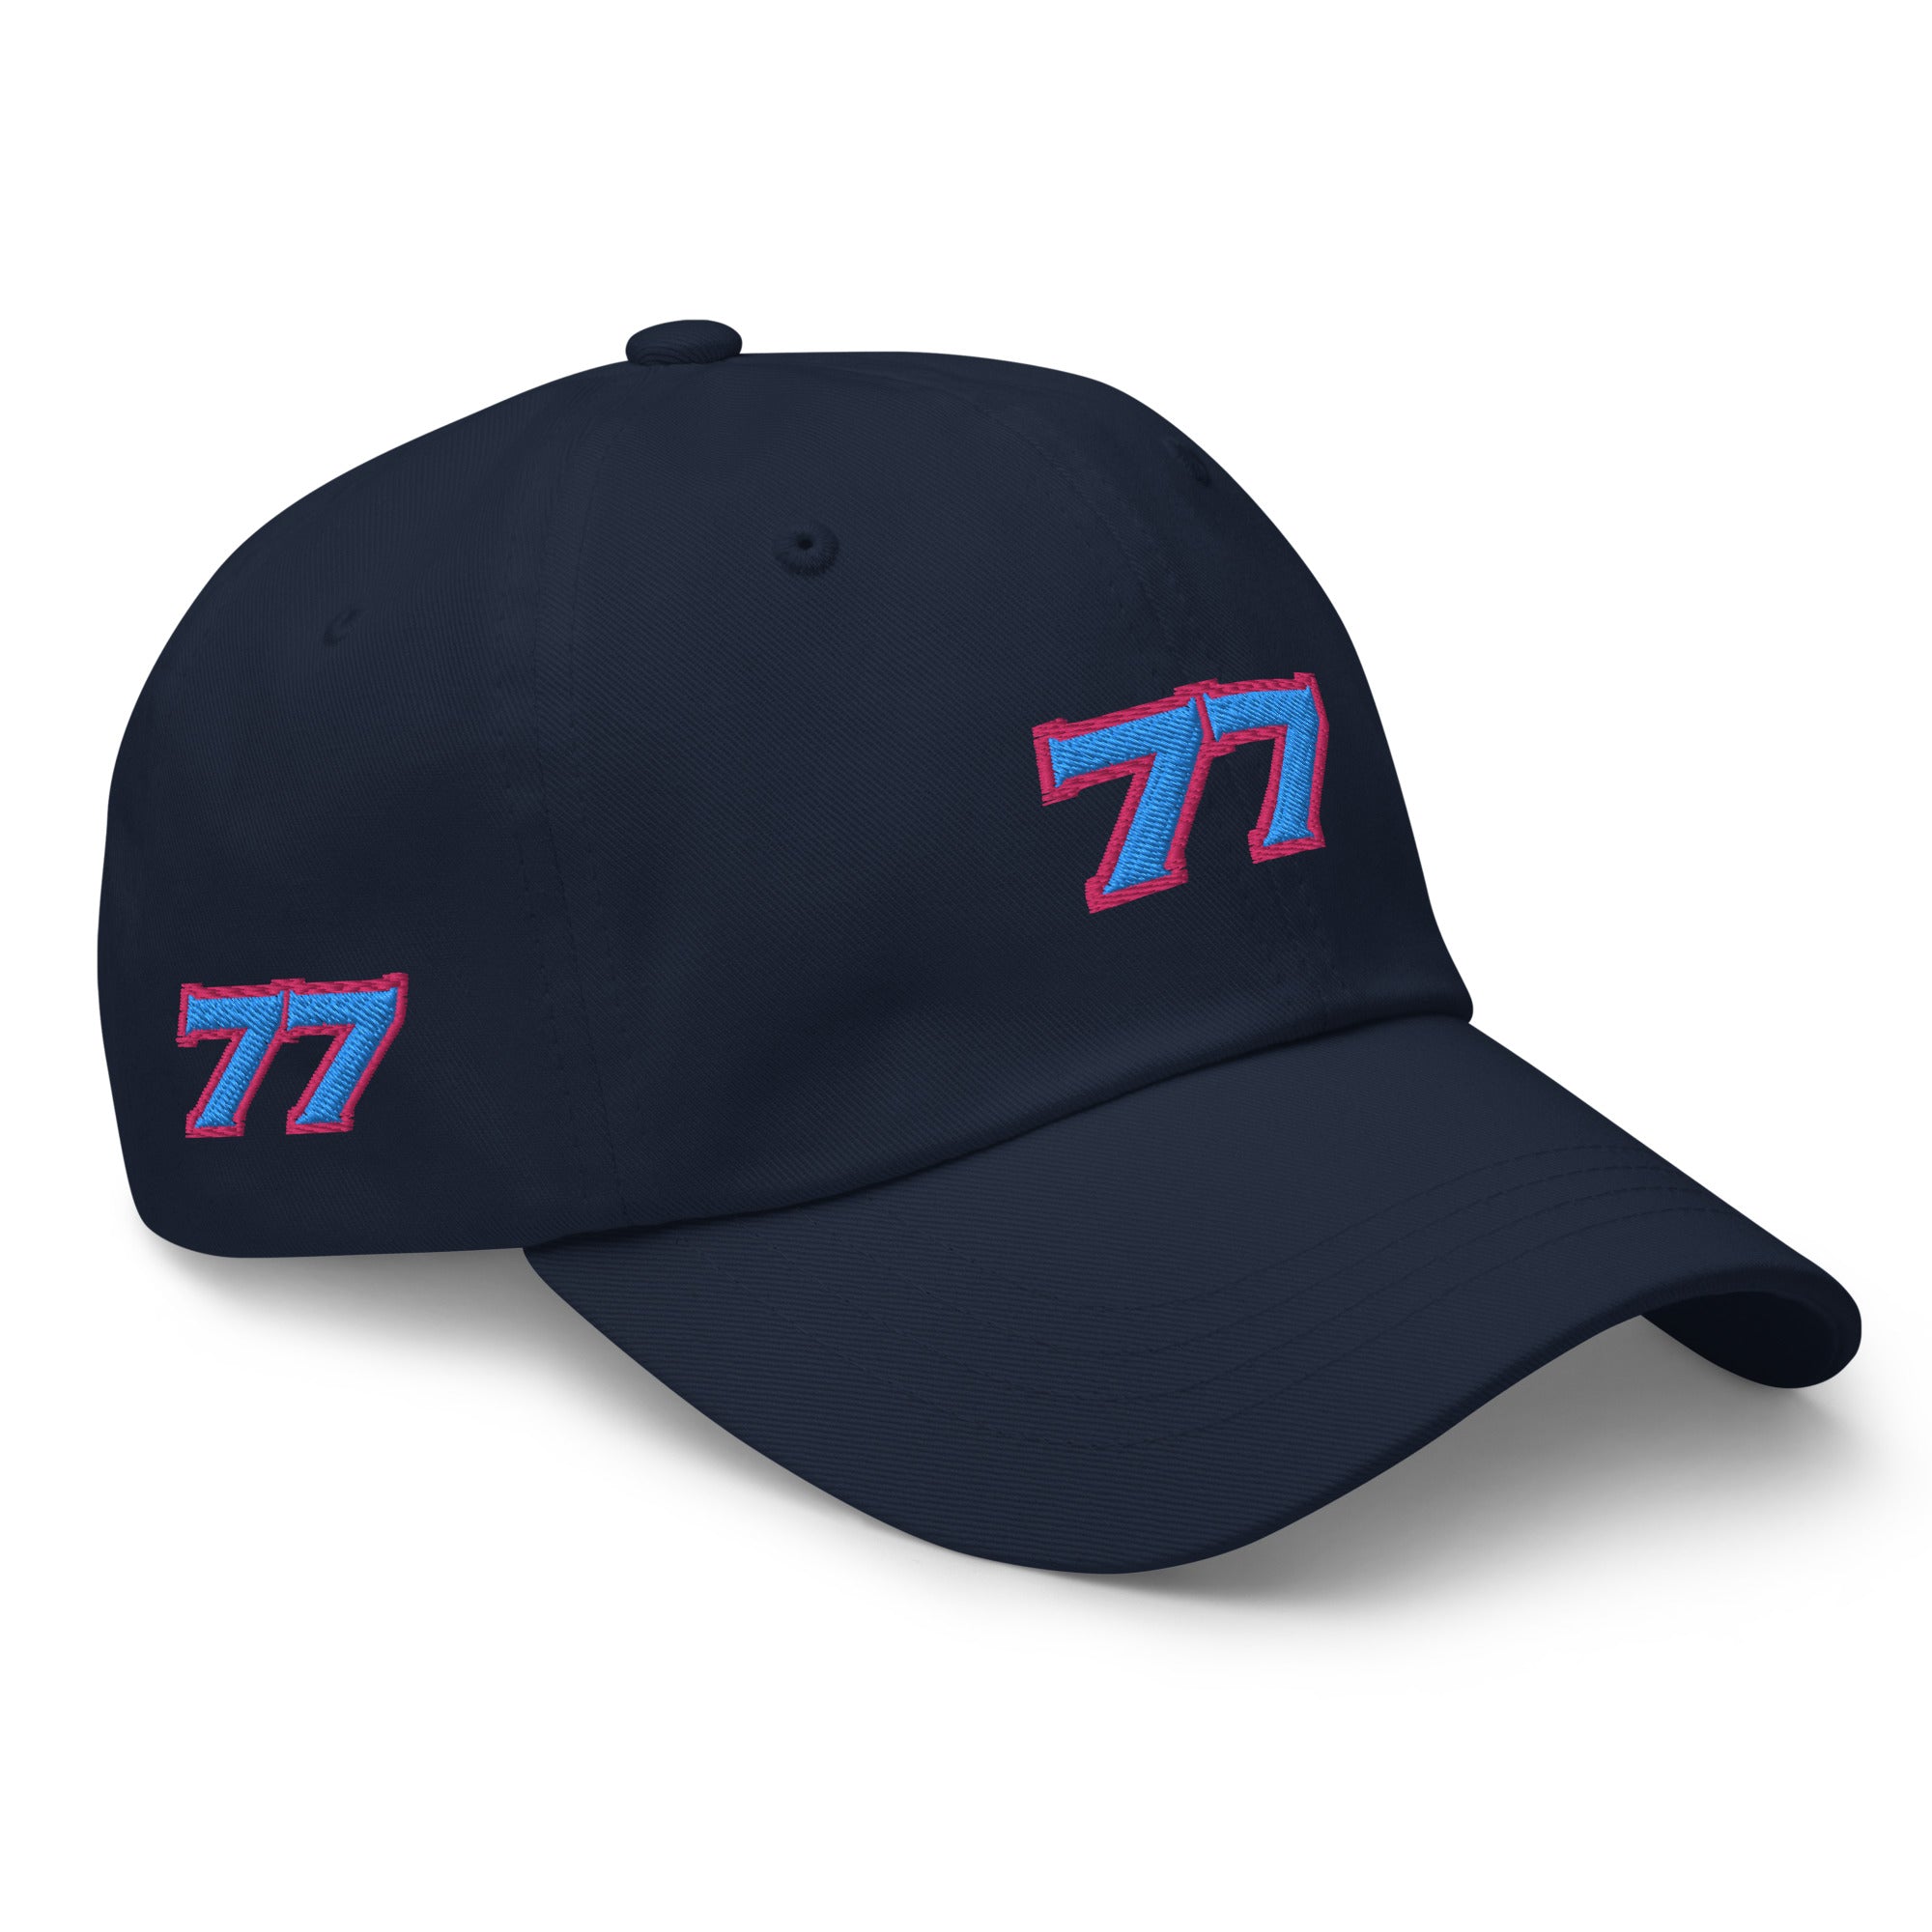 No Race No Fun 77, Cap, Hat